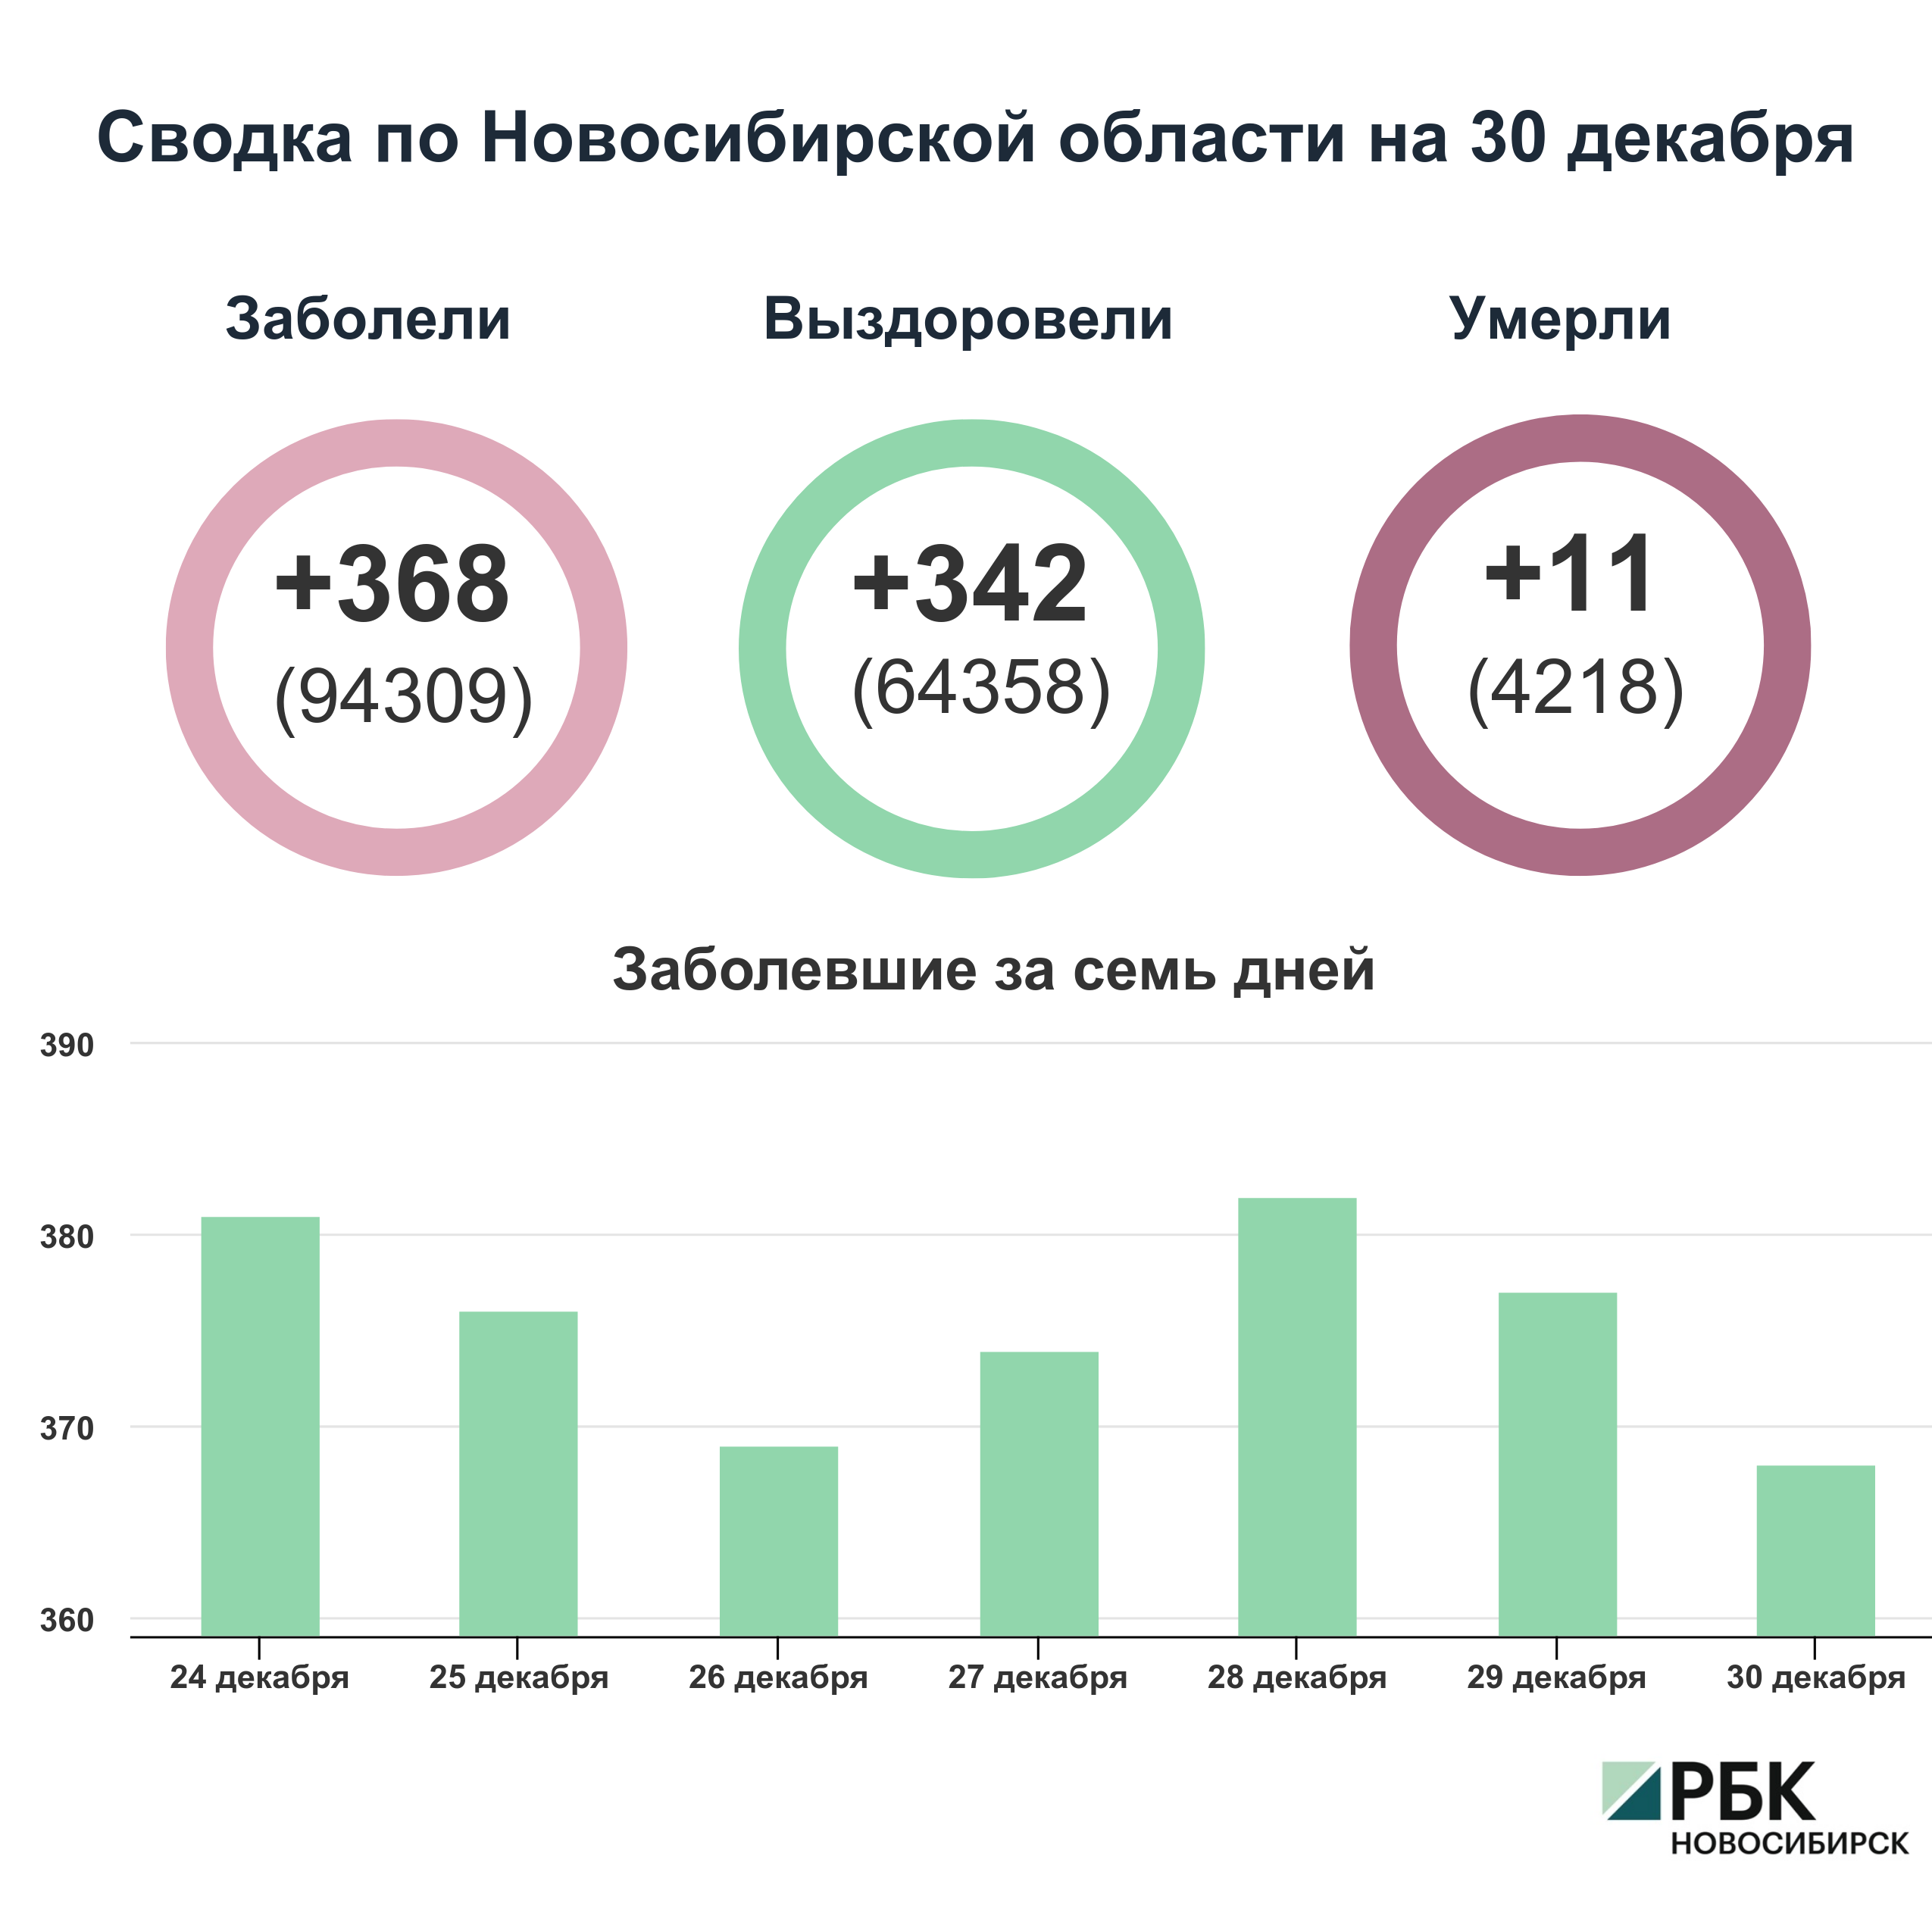 Коронавирус в Новосибирске: сводка на 30 декабря